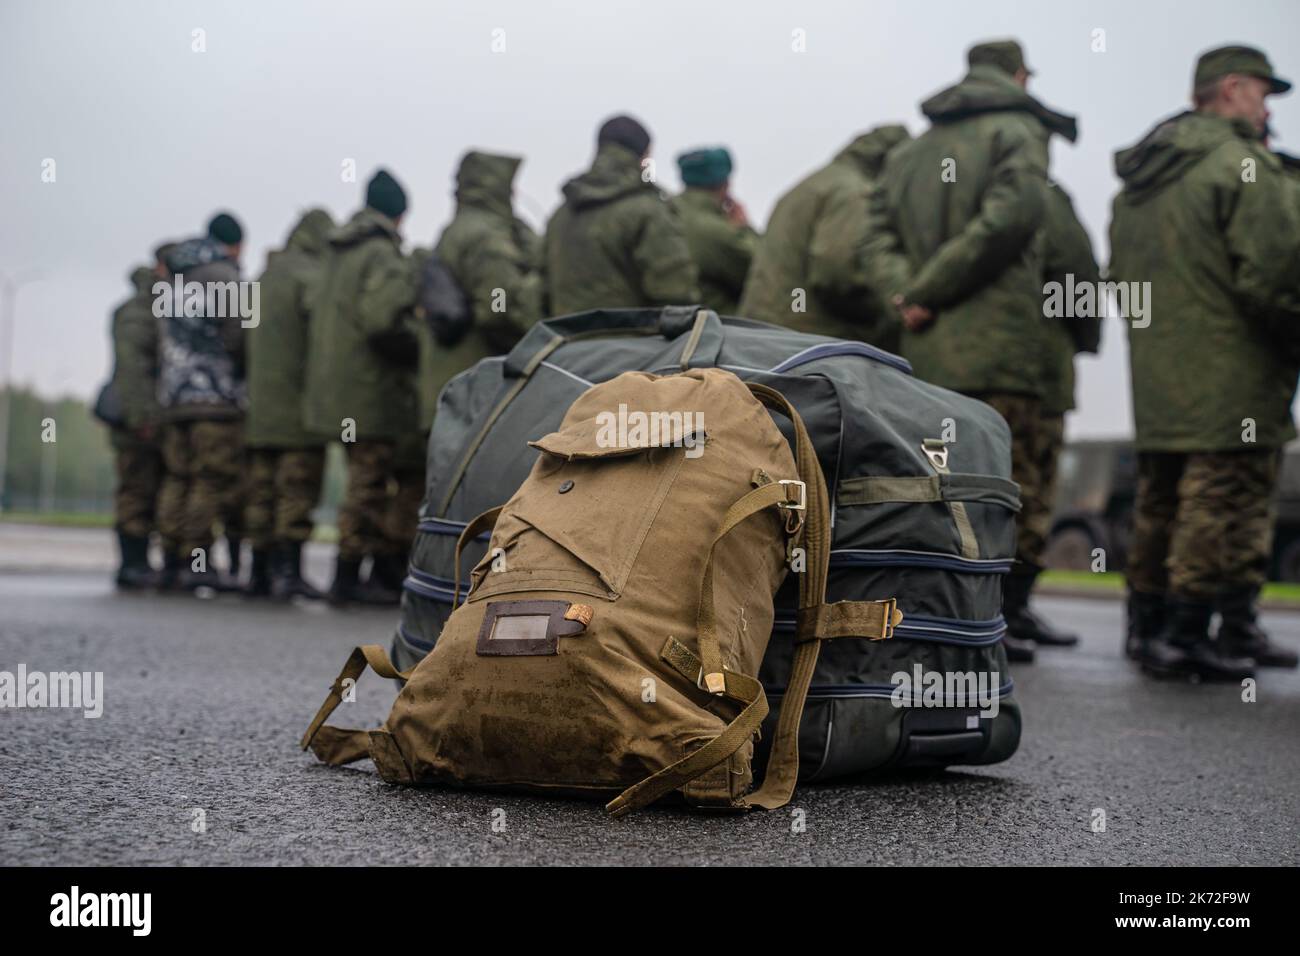 Mobilisierung in Russland. Versammlung von Rekruten für die militärische Sonderoperation in der Ukraine. Eine Soldatentasche. Soldaten mit Dingen, die auf die Mobilisierung warten. Stockfoto